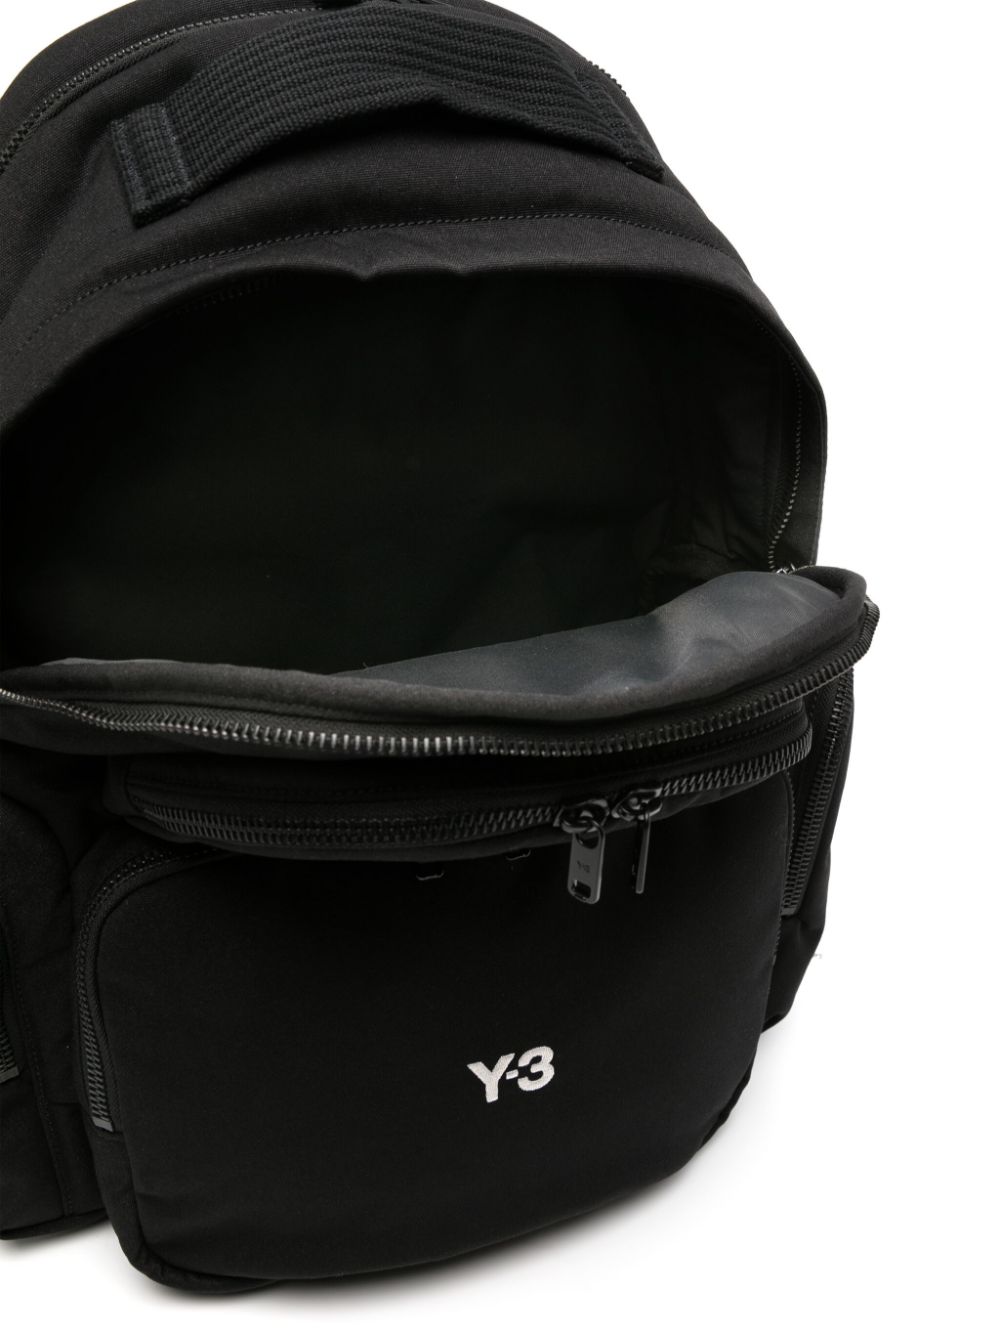 Black Y-3 backpack